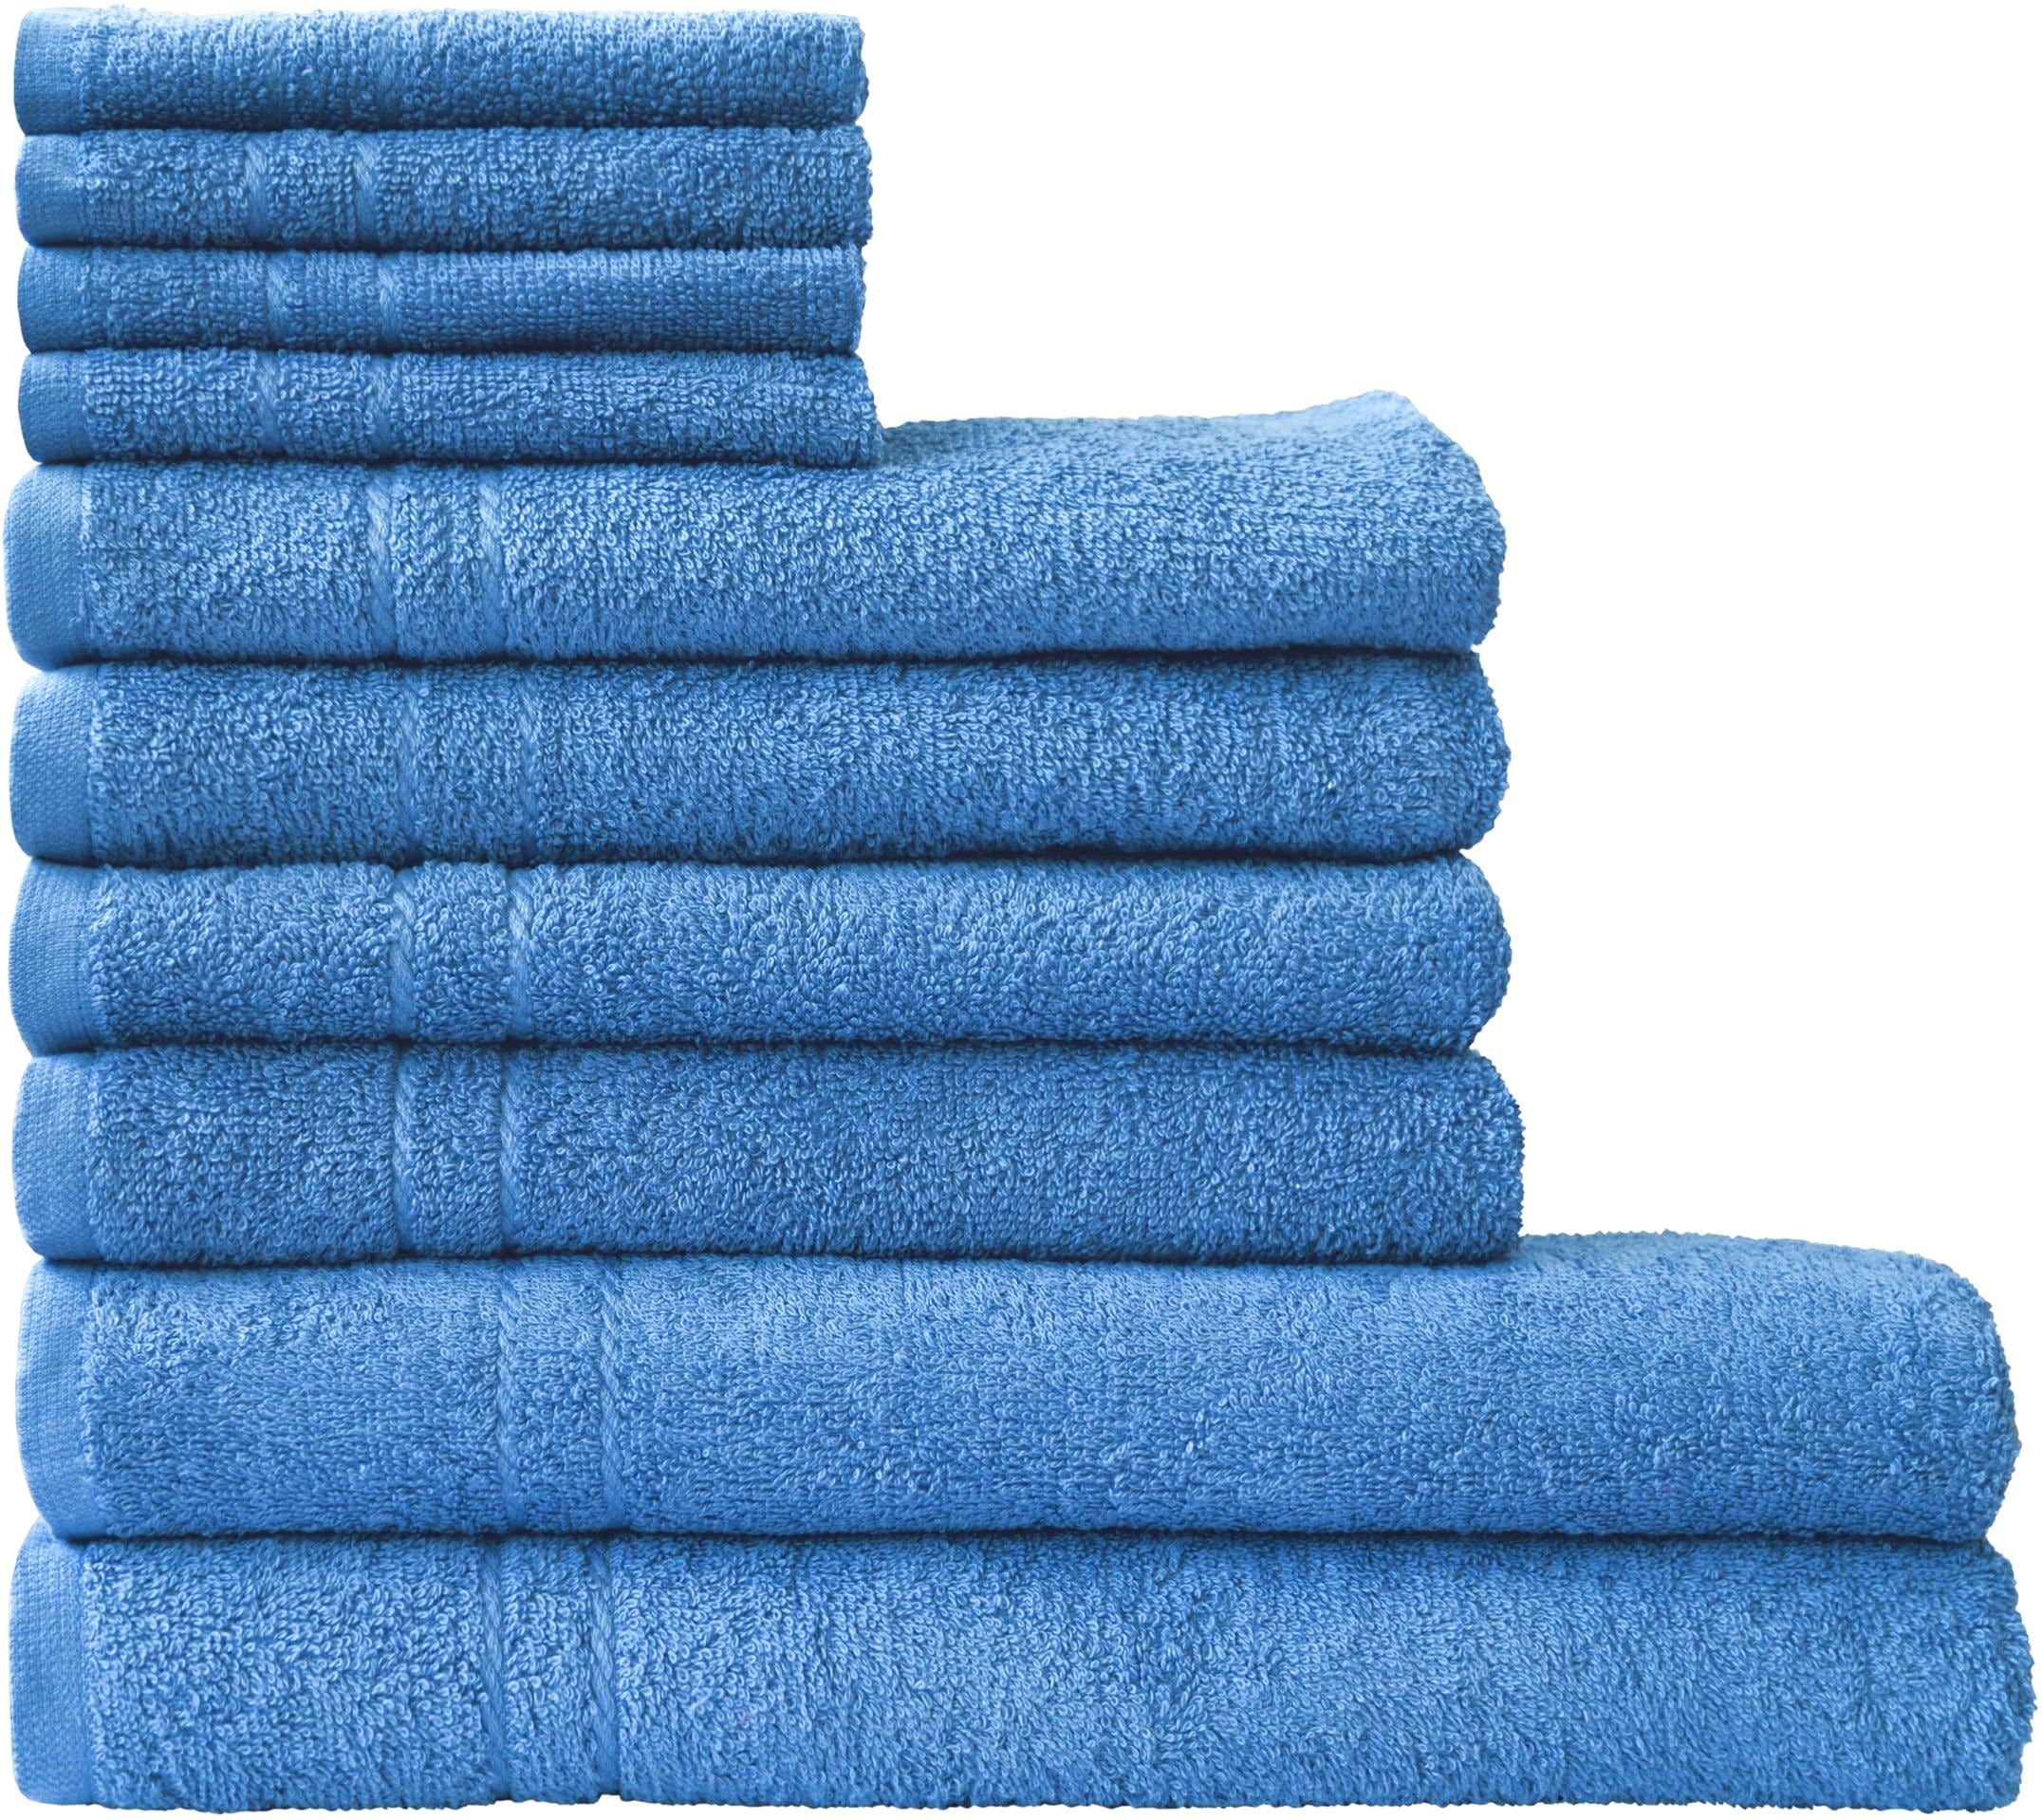 Handtuch-Sets online liefern Quelle – Wir kaufen bei